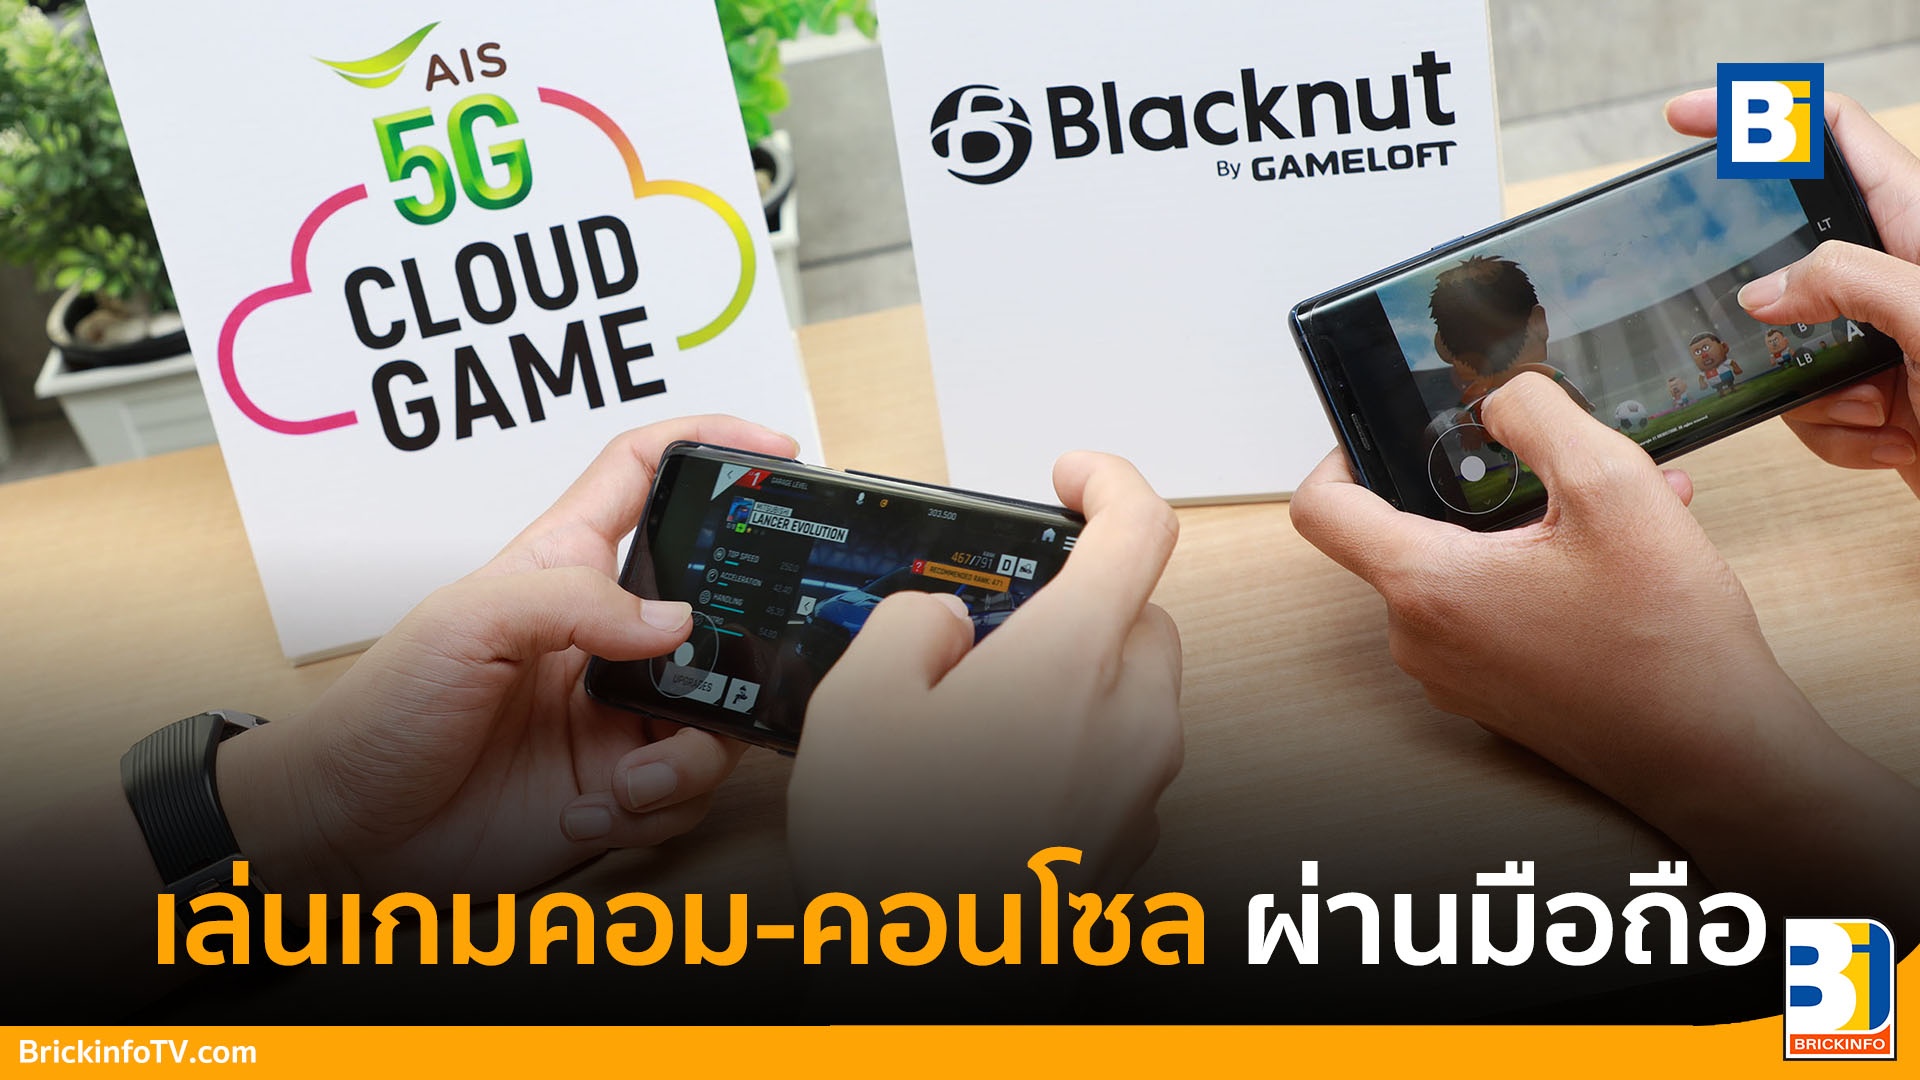 AIS 5G Cloud Game